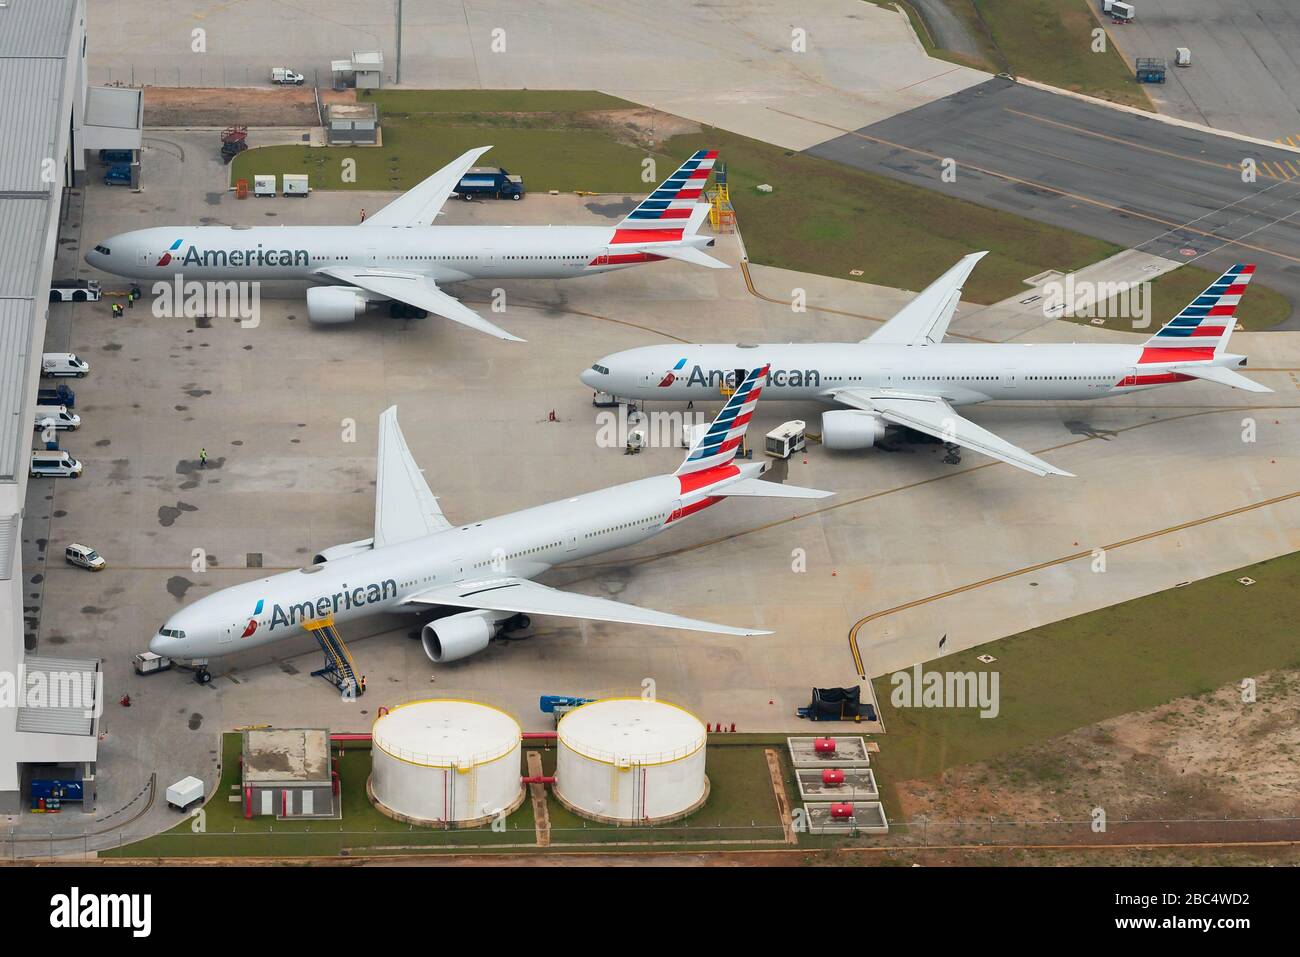 Boeing 777 d'American Airlines garés devant le hangar. Nouvelle installation de maintenance à Sao Paulo, Brésil. Avions mis au sol de nos jours. Banque D'Images